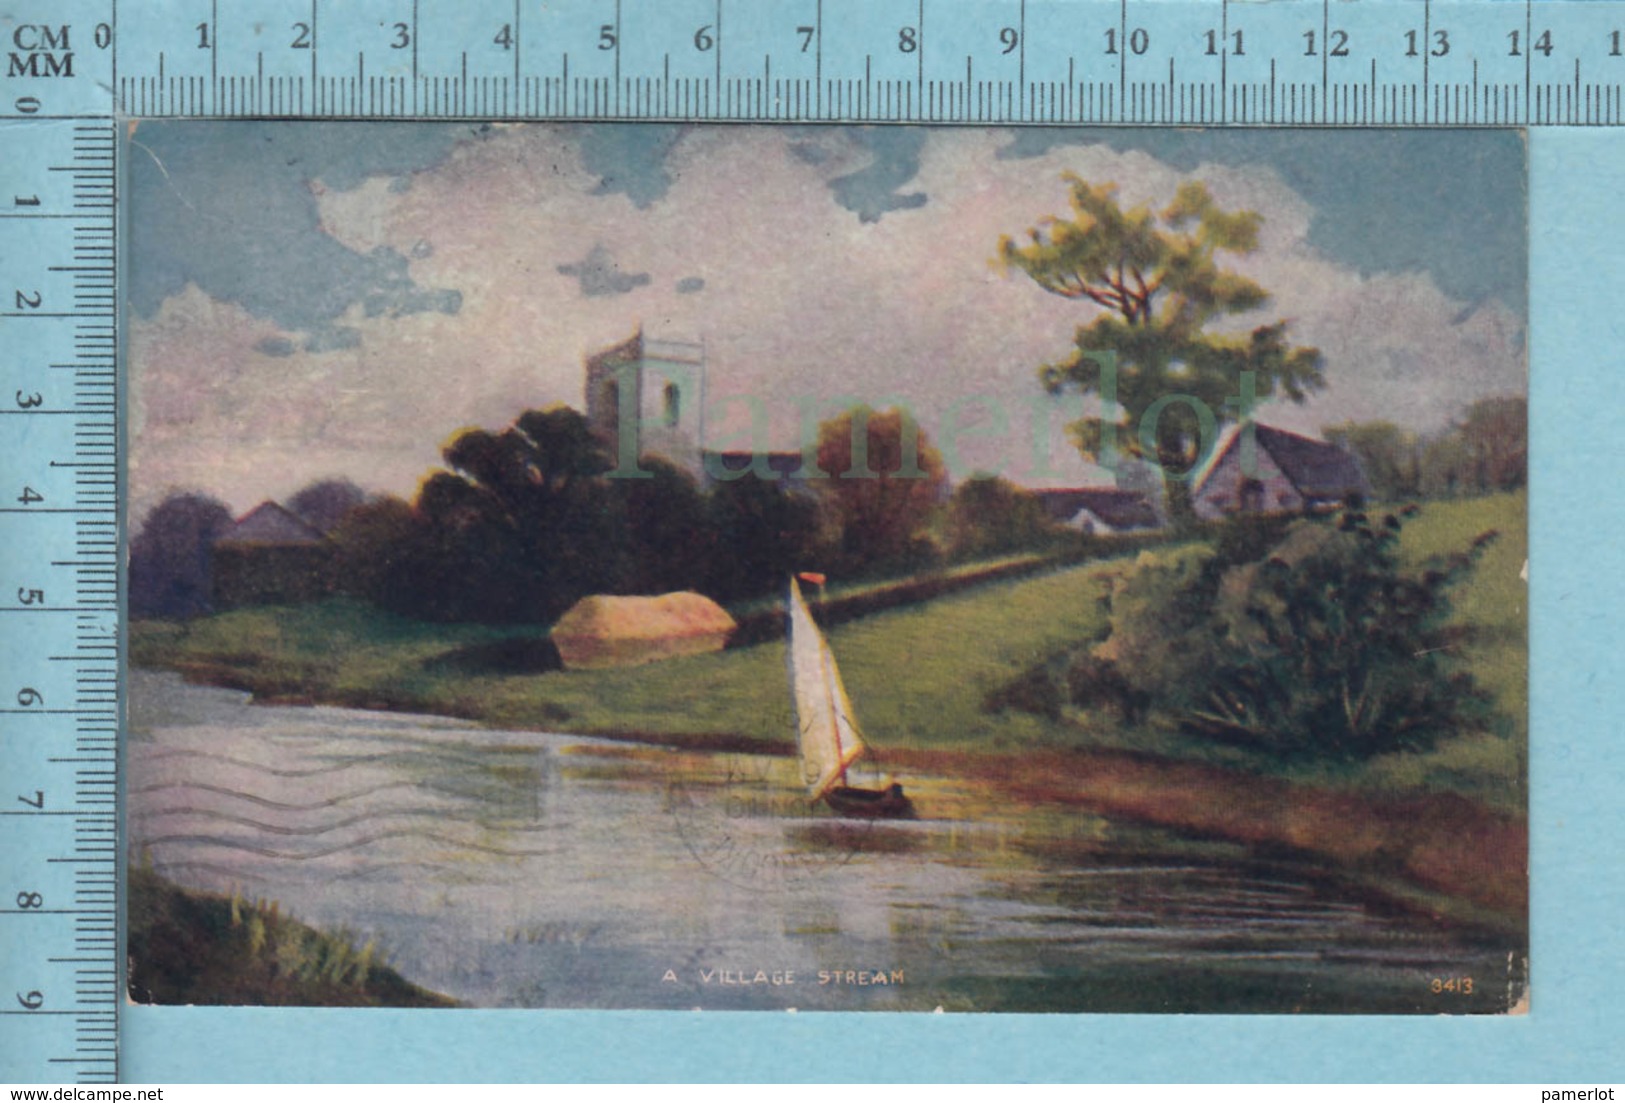 CPA- Village Stream #3413 - A Servie En 1910 - Post Card Carte Postale - Peintures & Tableaux